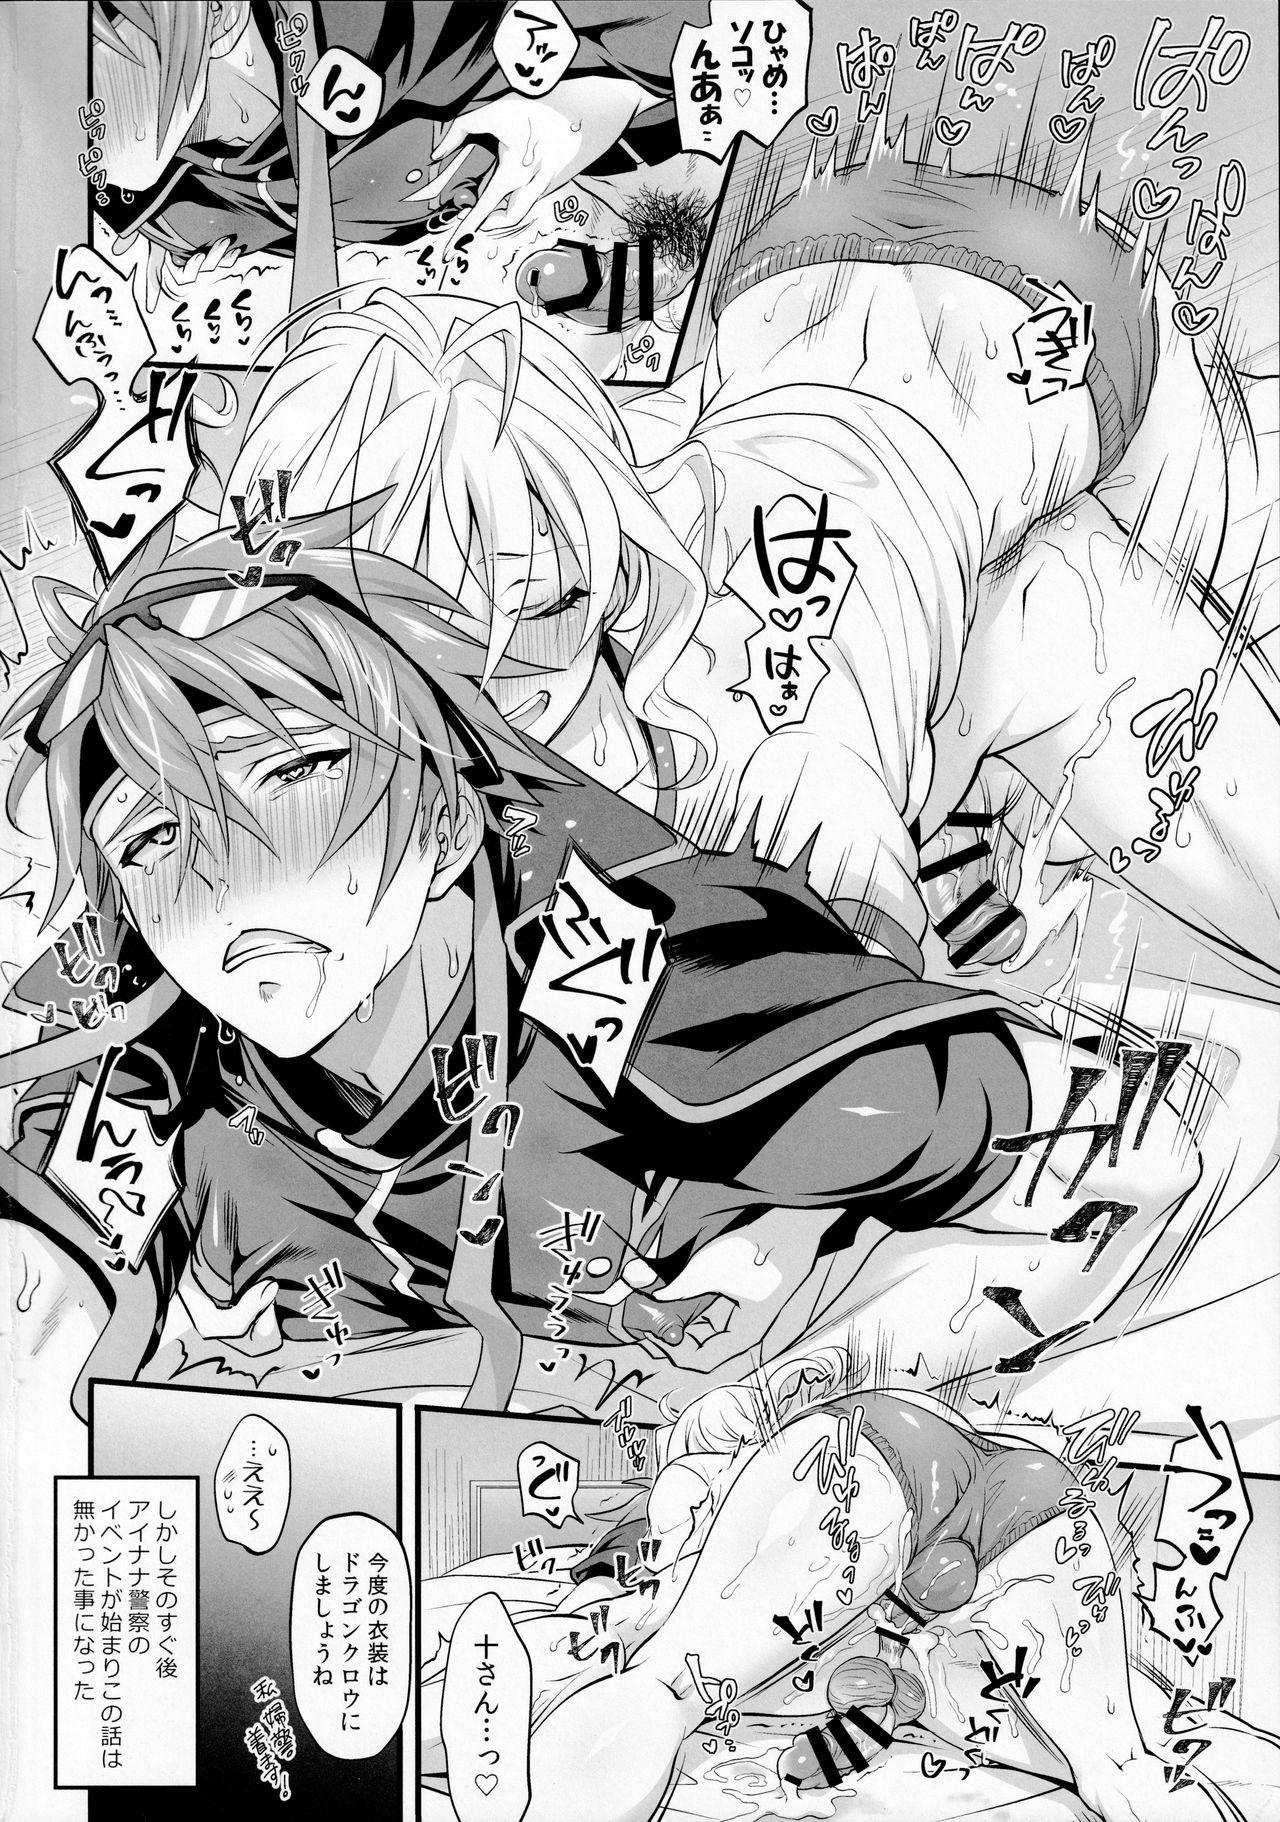 Self Watashi no Ochinchin ga Amaeta Gatterun desu! - Idolish7 Safado - Page 18